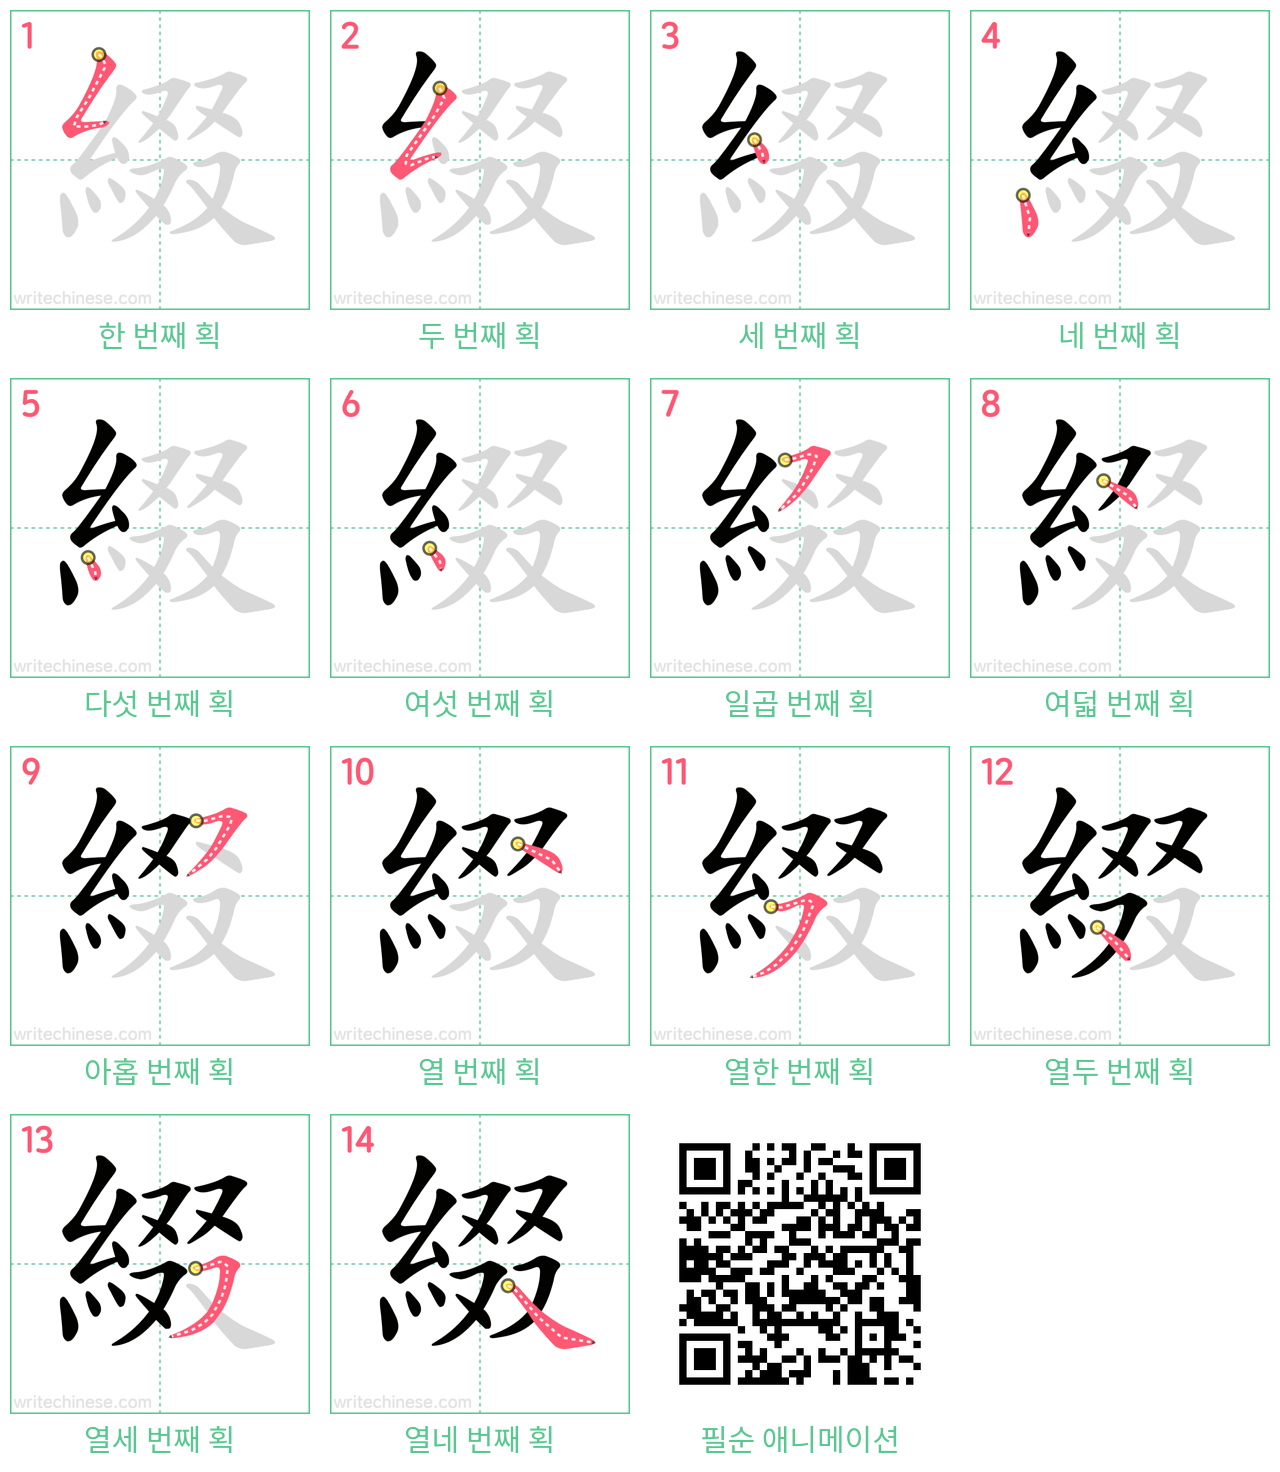 綴 step-by-step stroke order diagrams